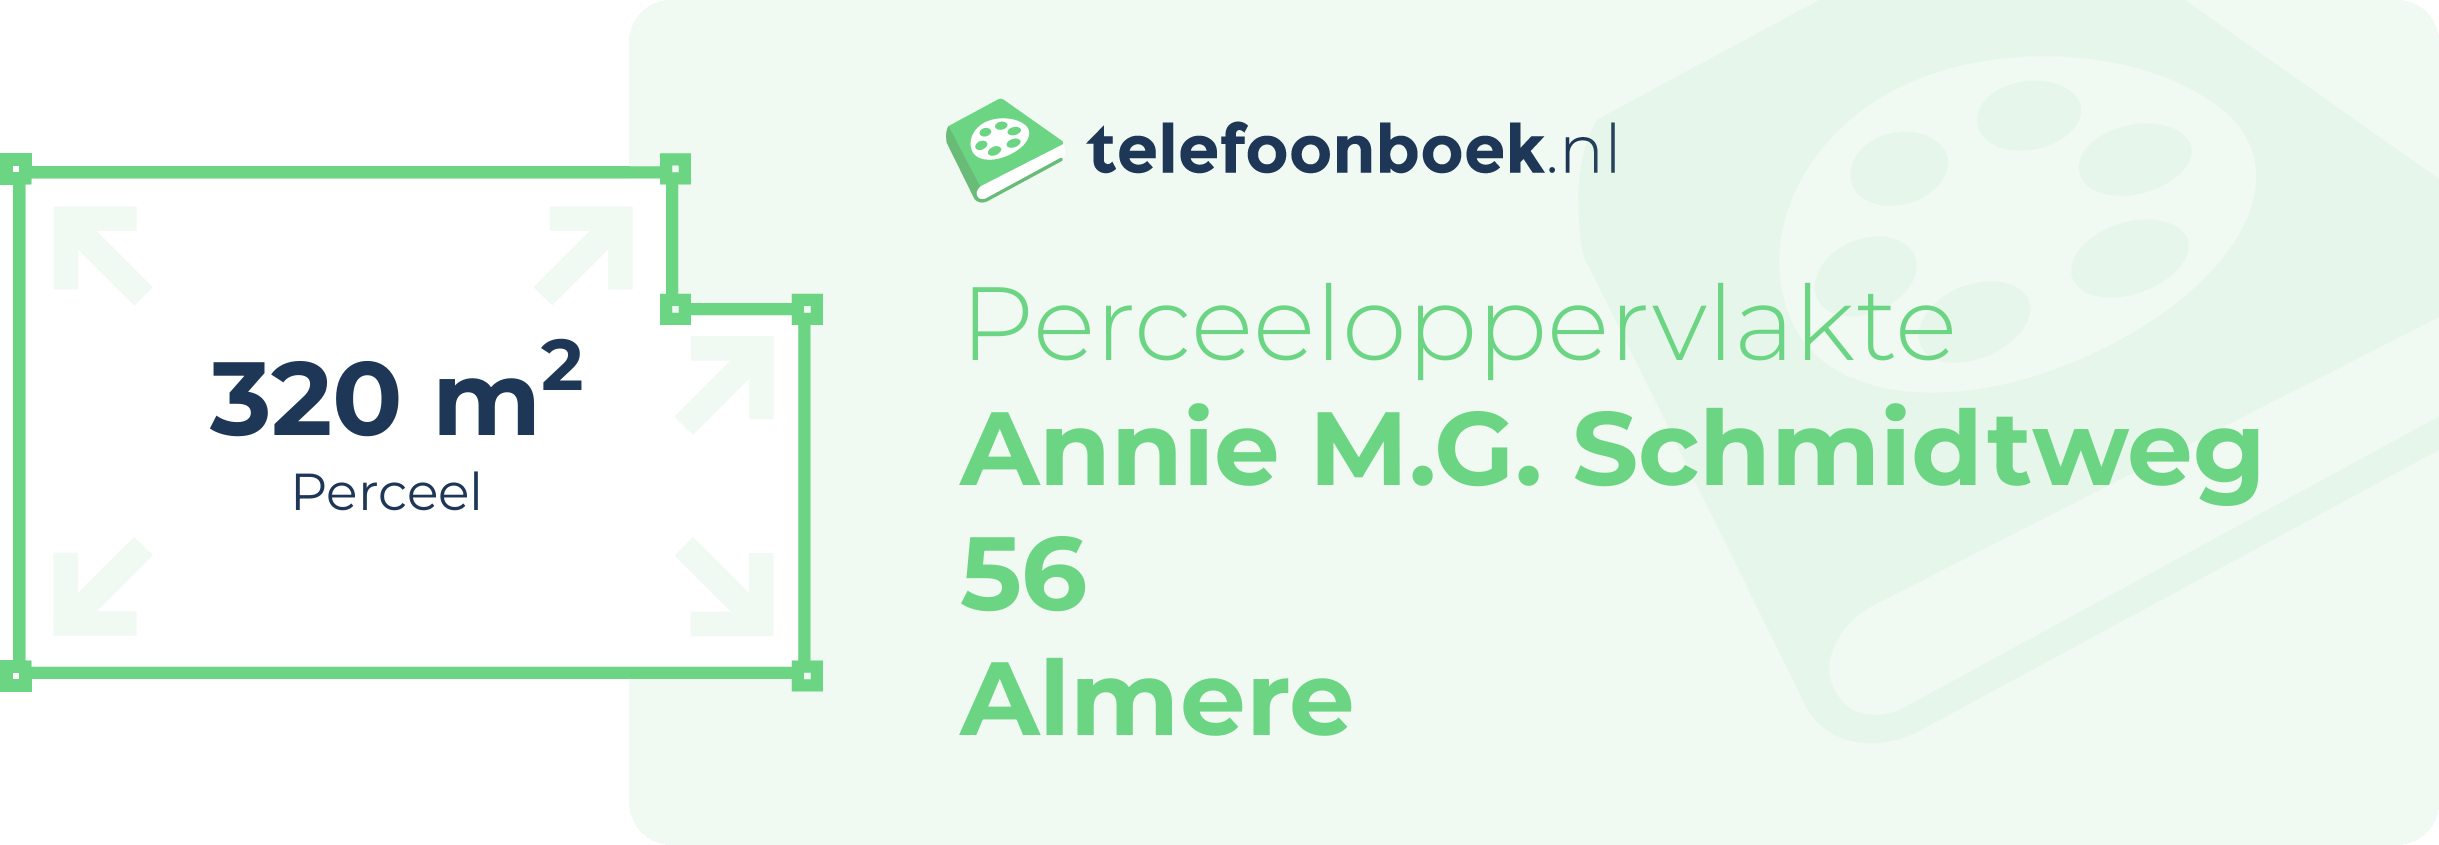 Perceeloppervlakte Annie M.G. Schmidtweg 56 Almere